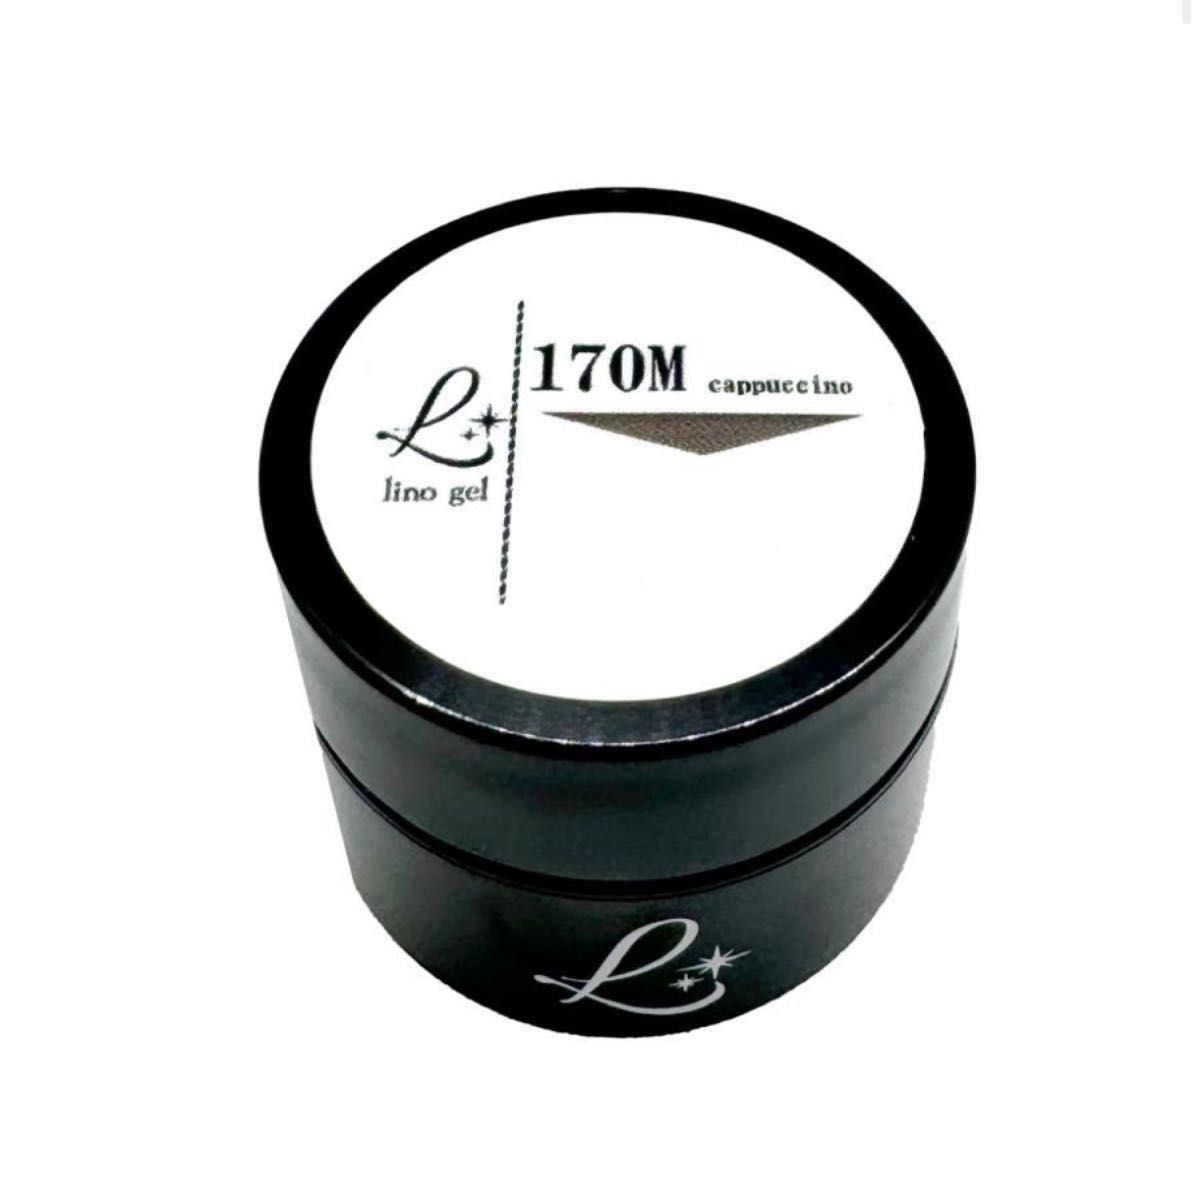 LinoGel リノジェル カラージェル 5g LED/UVライト対応 170M カプチーノ cappuccino プロフェショナ